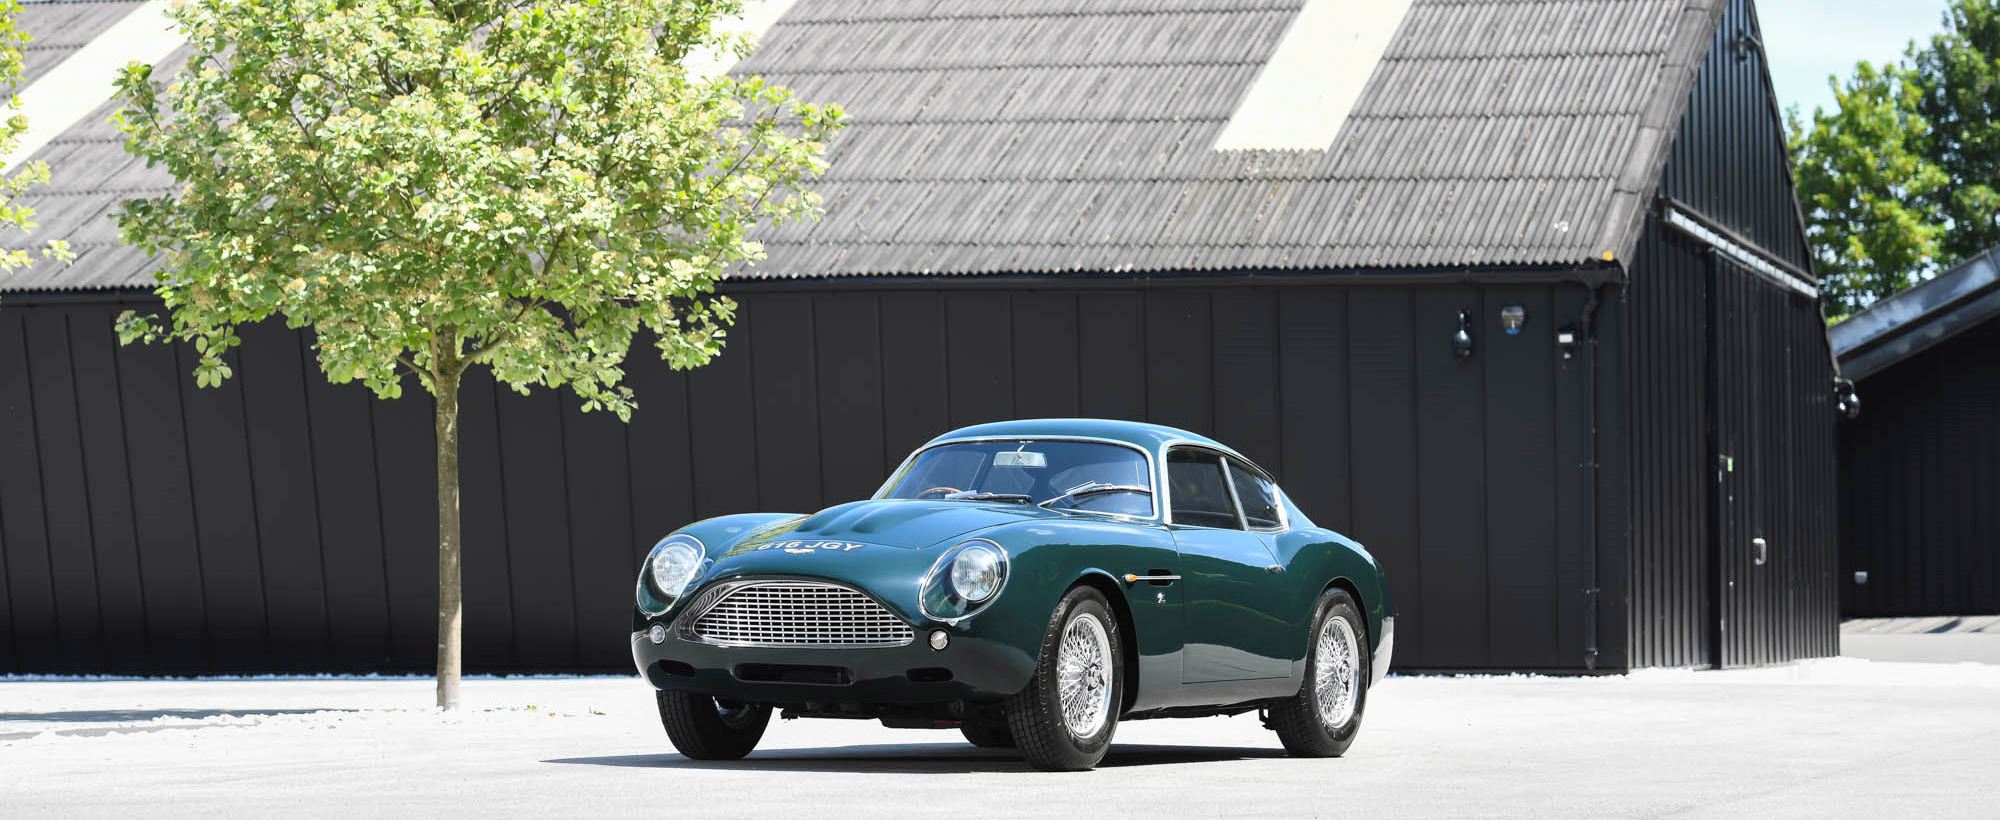 Aston Martin DB4 Zagato 001.jpg